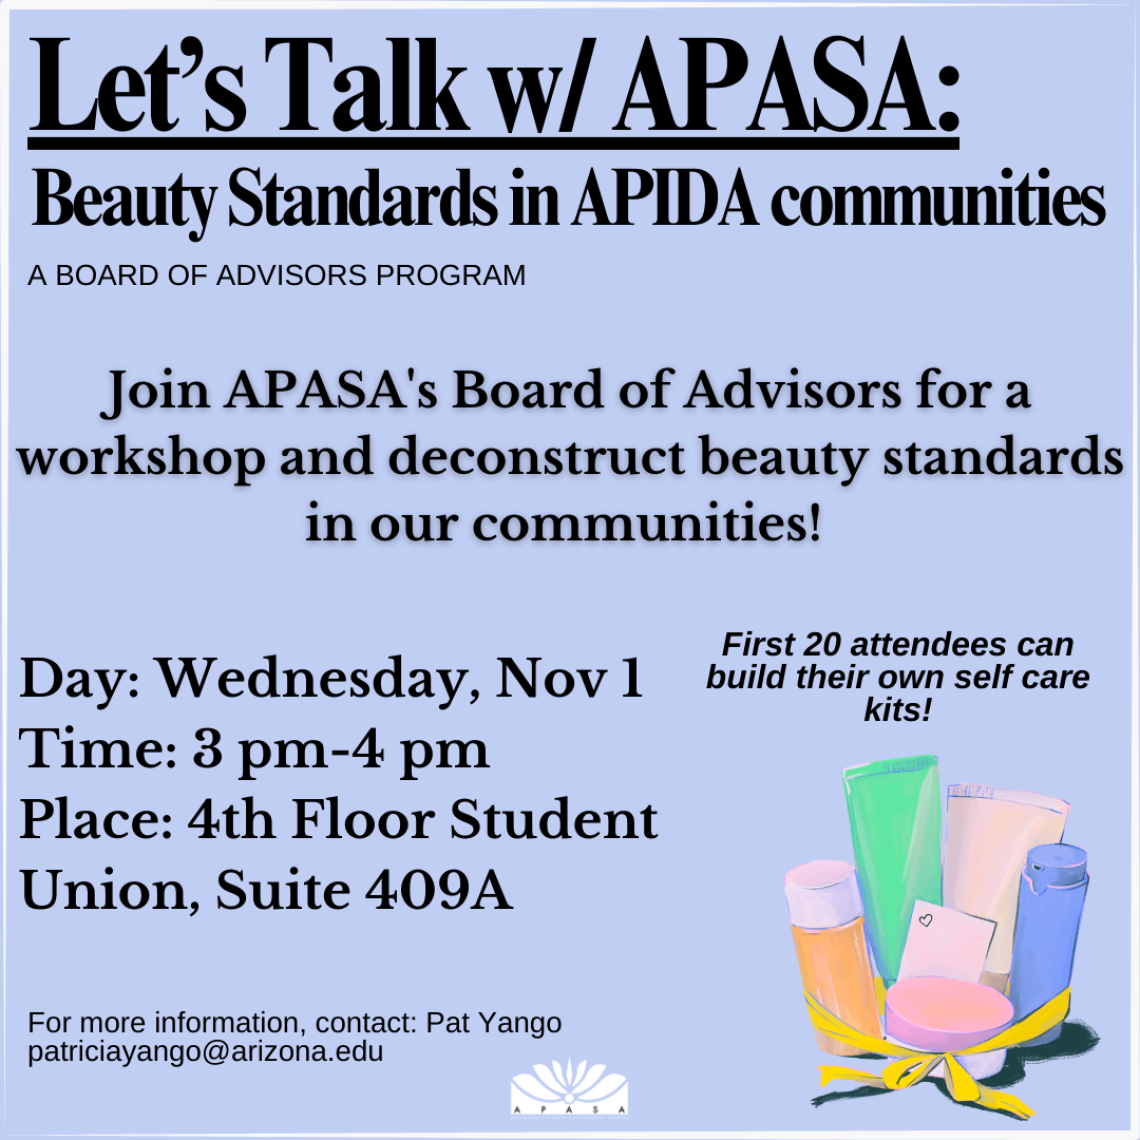 Beauty Standards in APIDA Communities